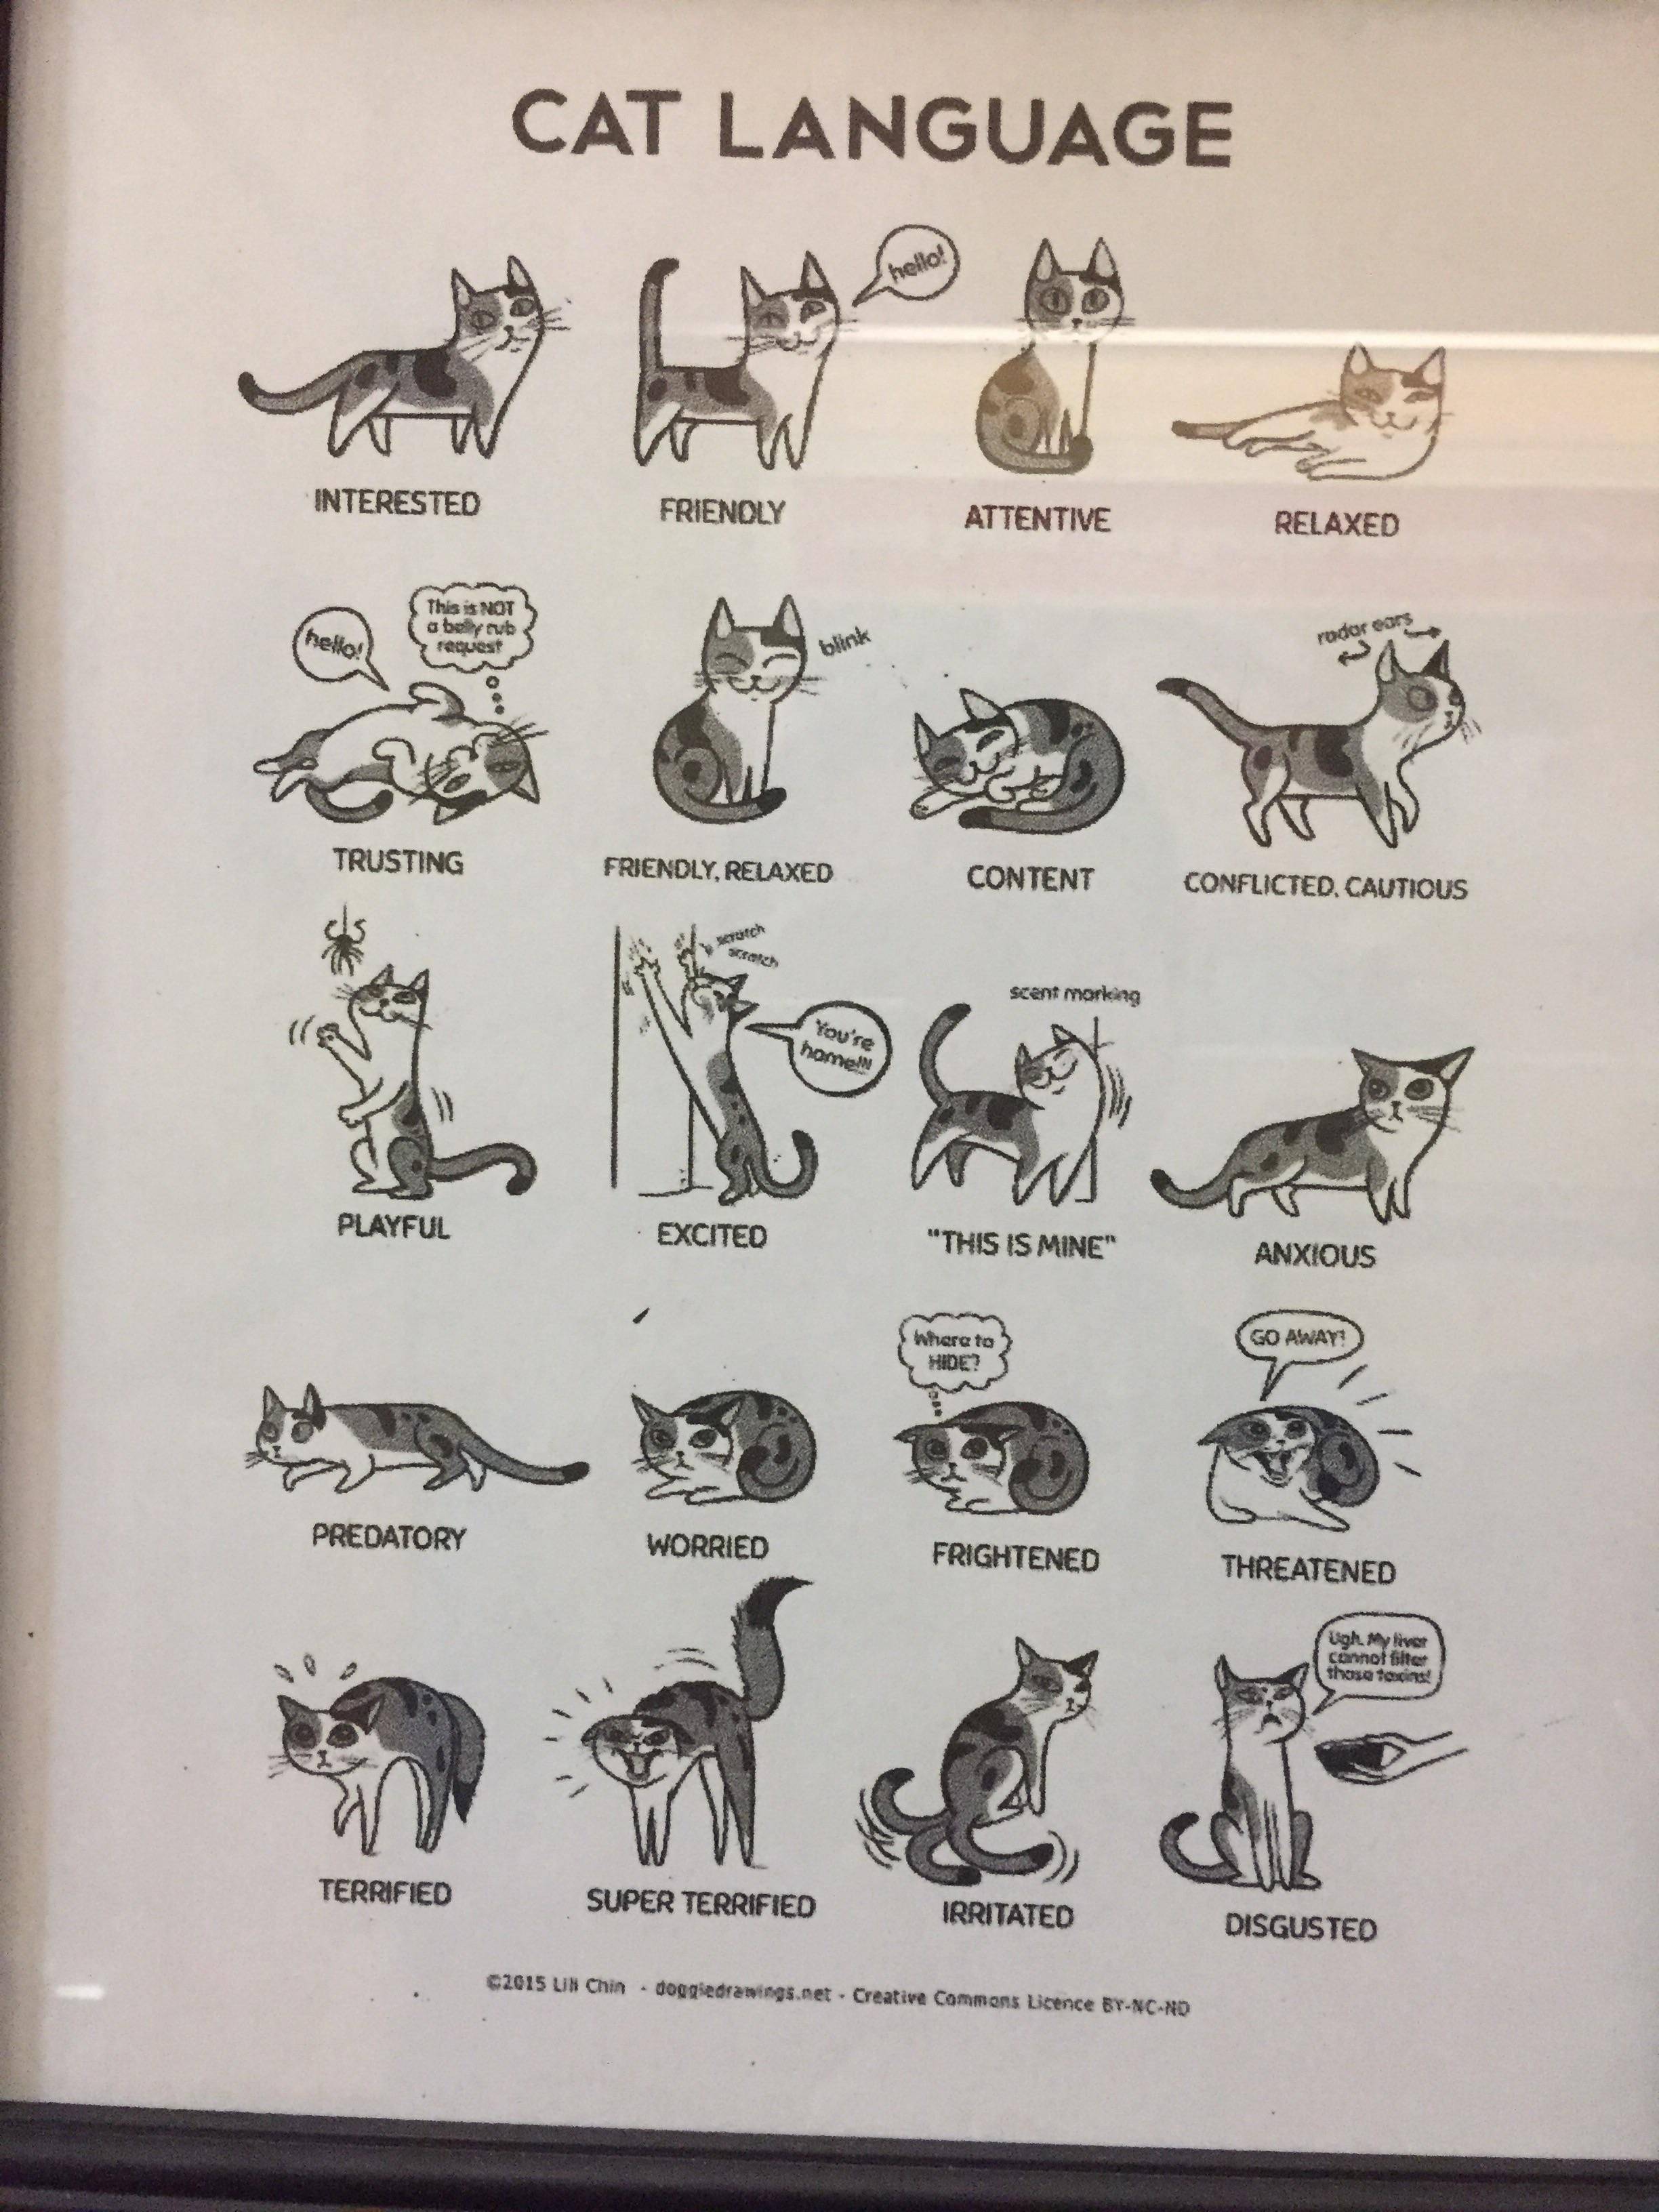 Переводчик: кошачий язык — общечеловеческий